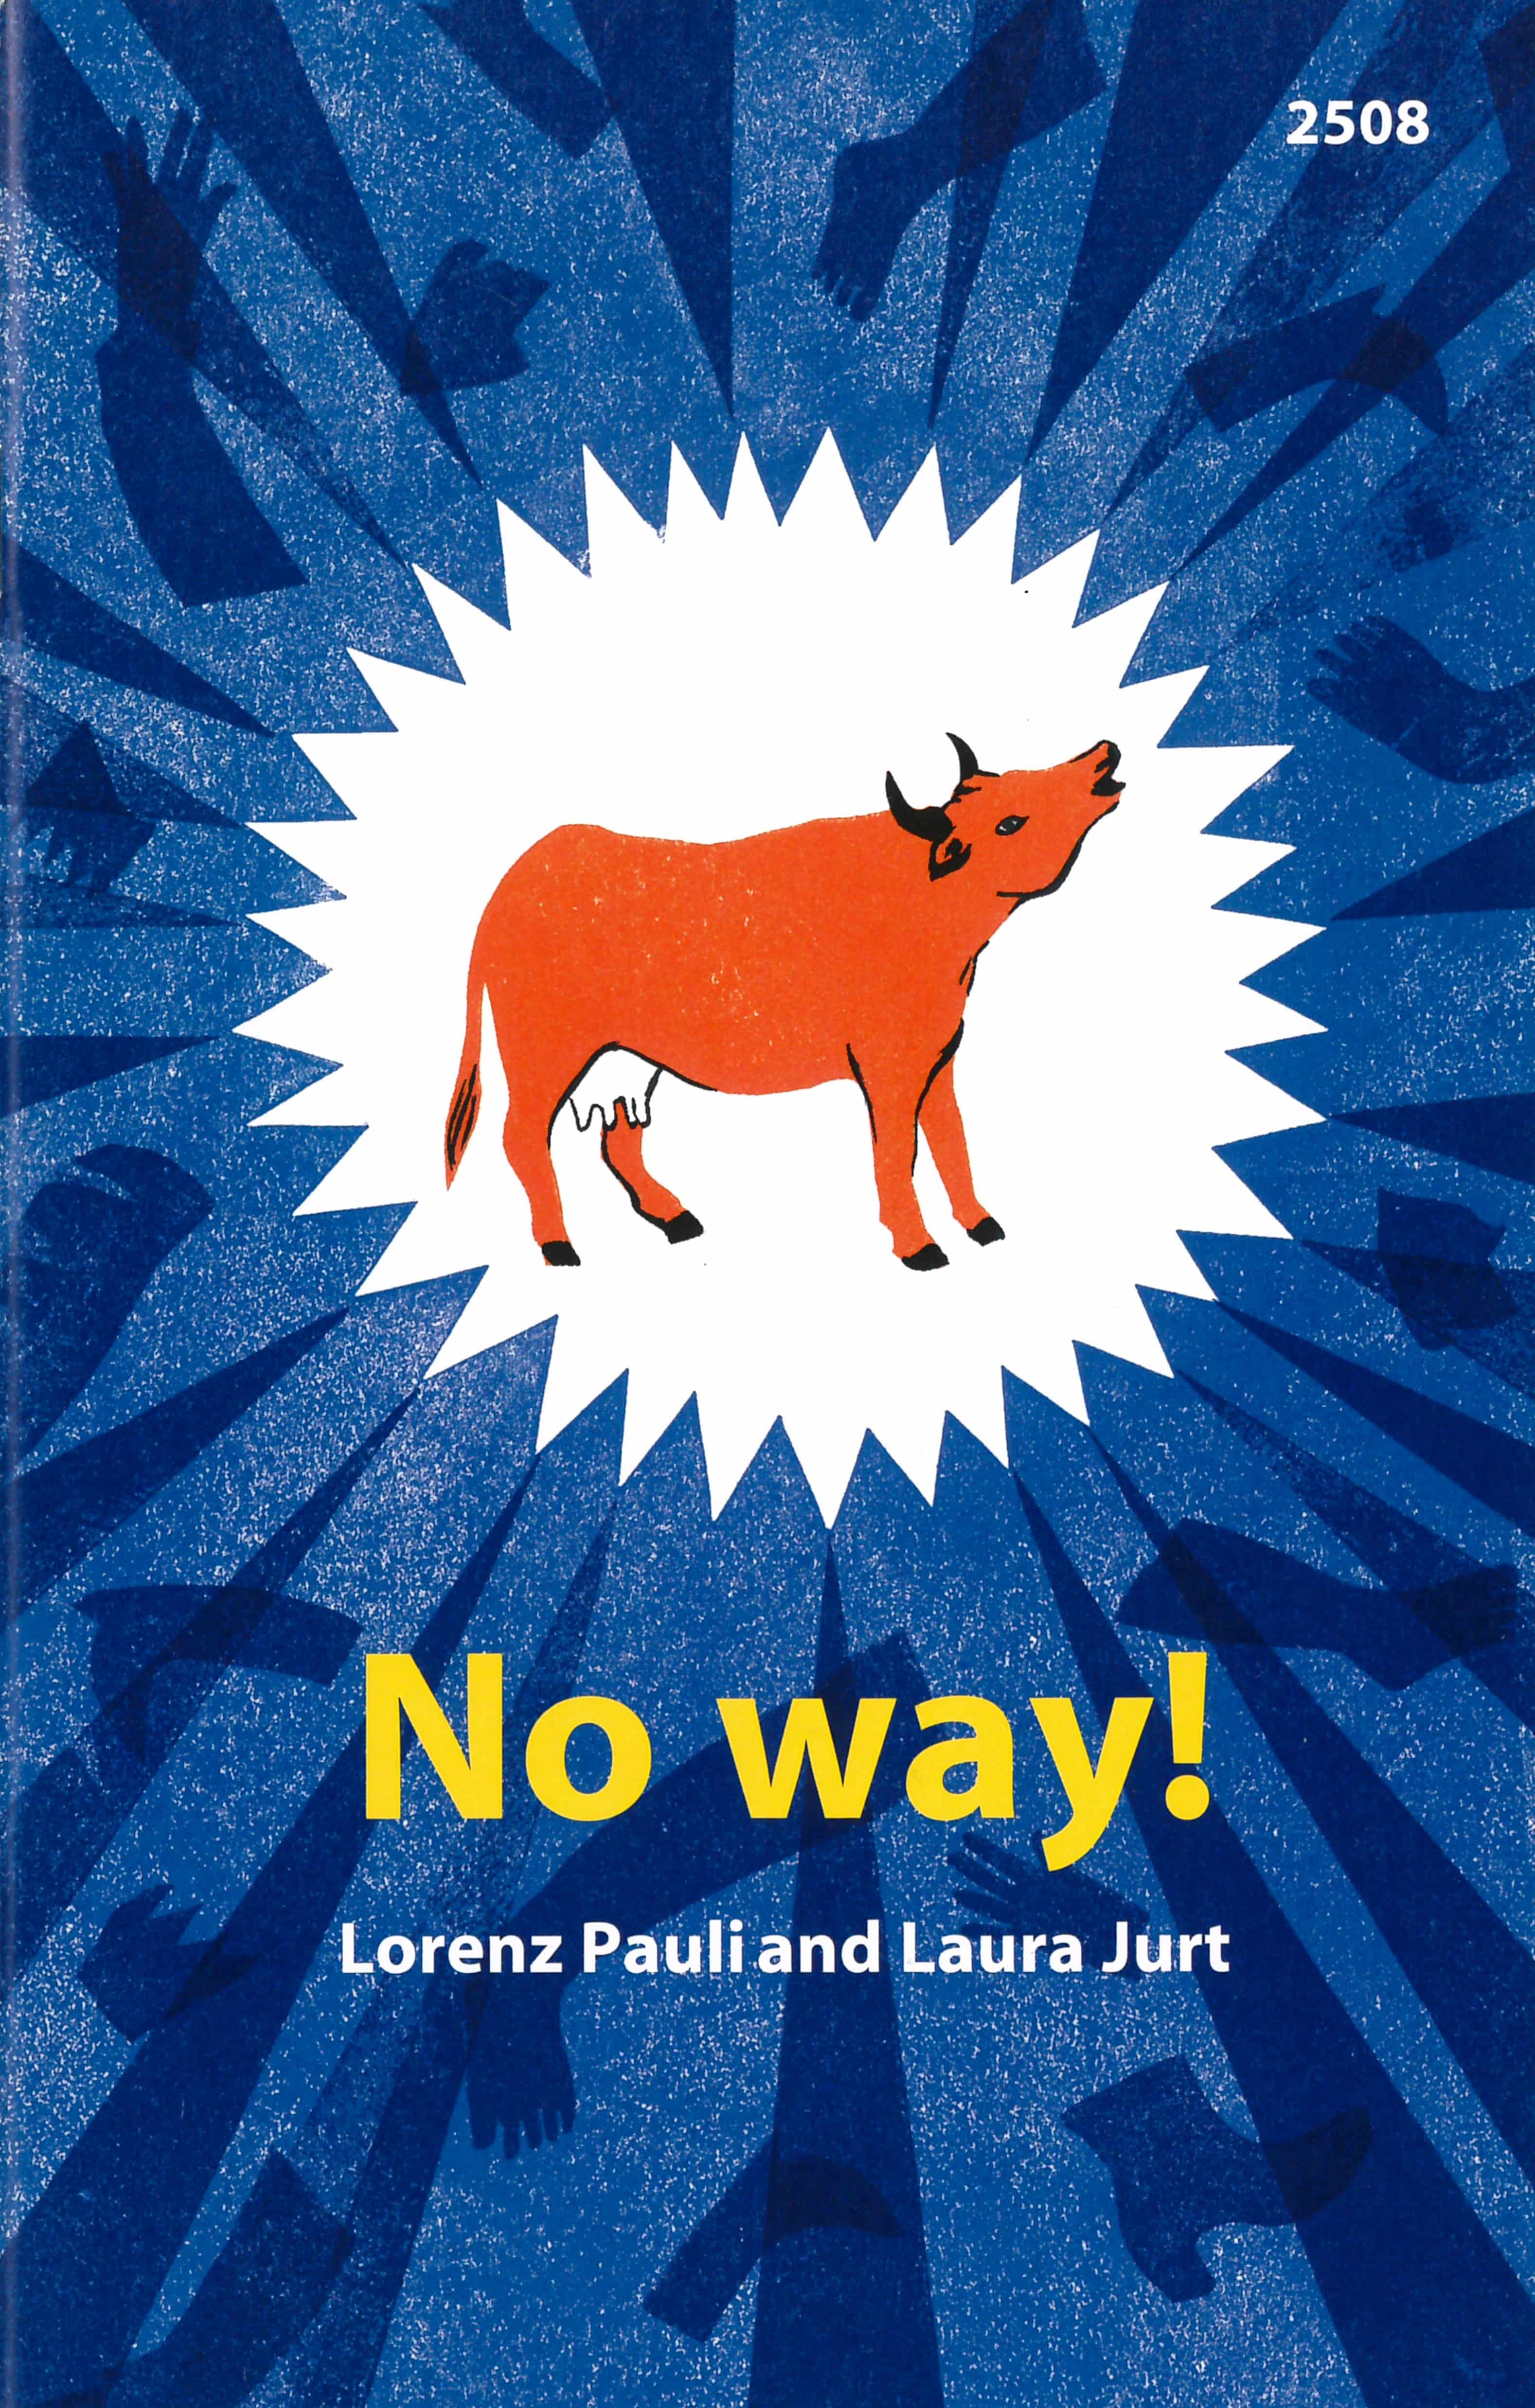 No way!, ein Kinderbuch von Lorenz Pauli, Illustration von Laura Jurt, SJW Verlag, Sprachspiele